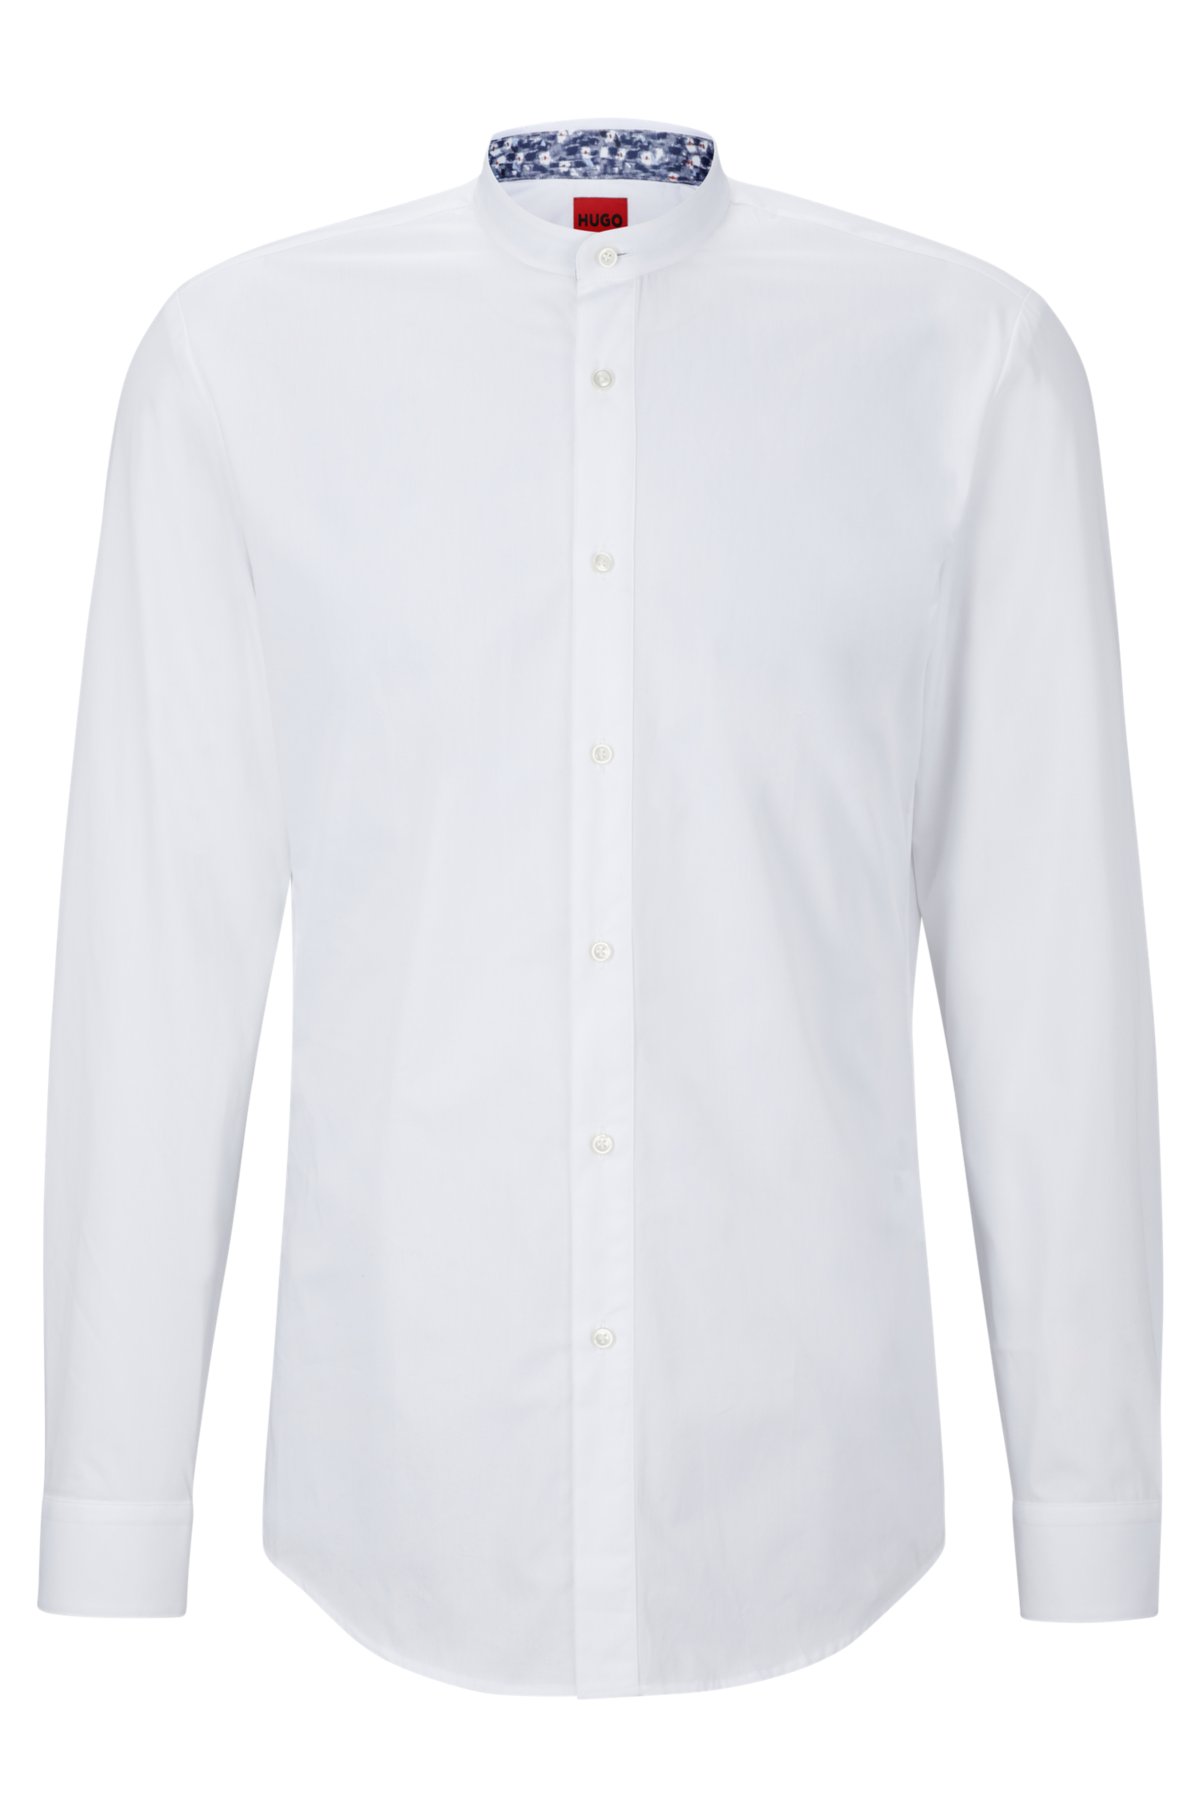 HUGO BOSS - Jolie chemise blanc / beige - Taille 15,45 / 40 - TRES